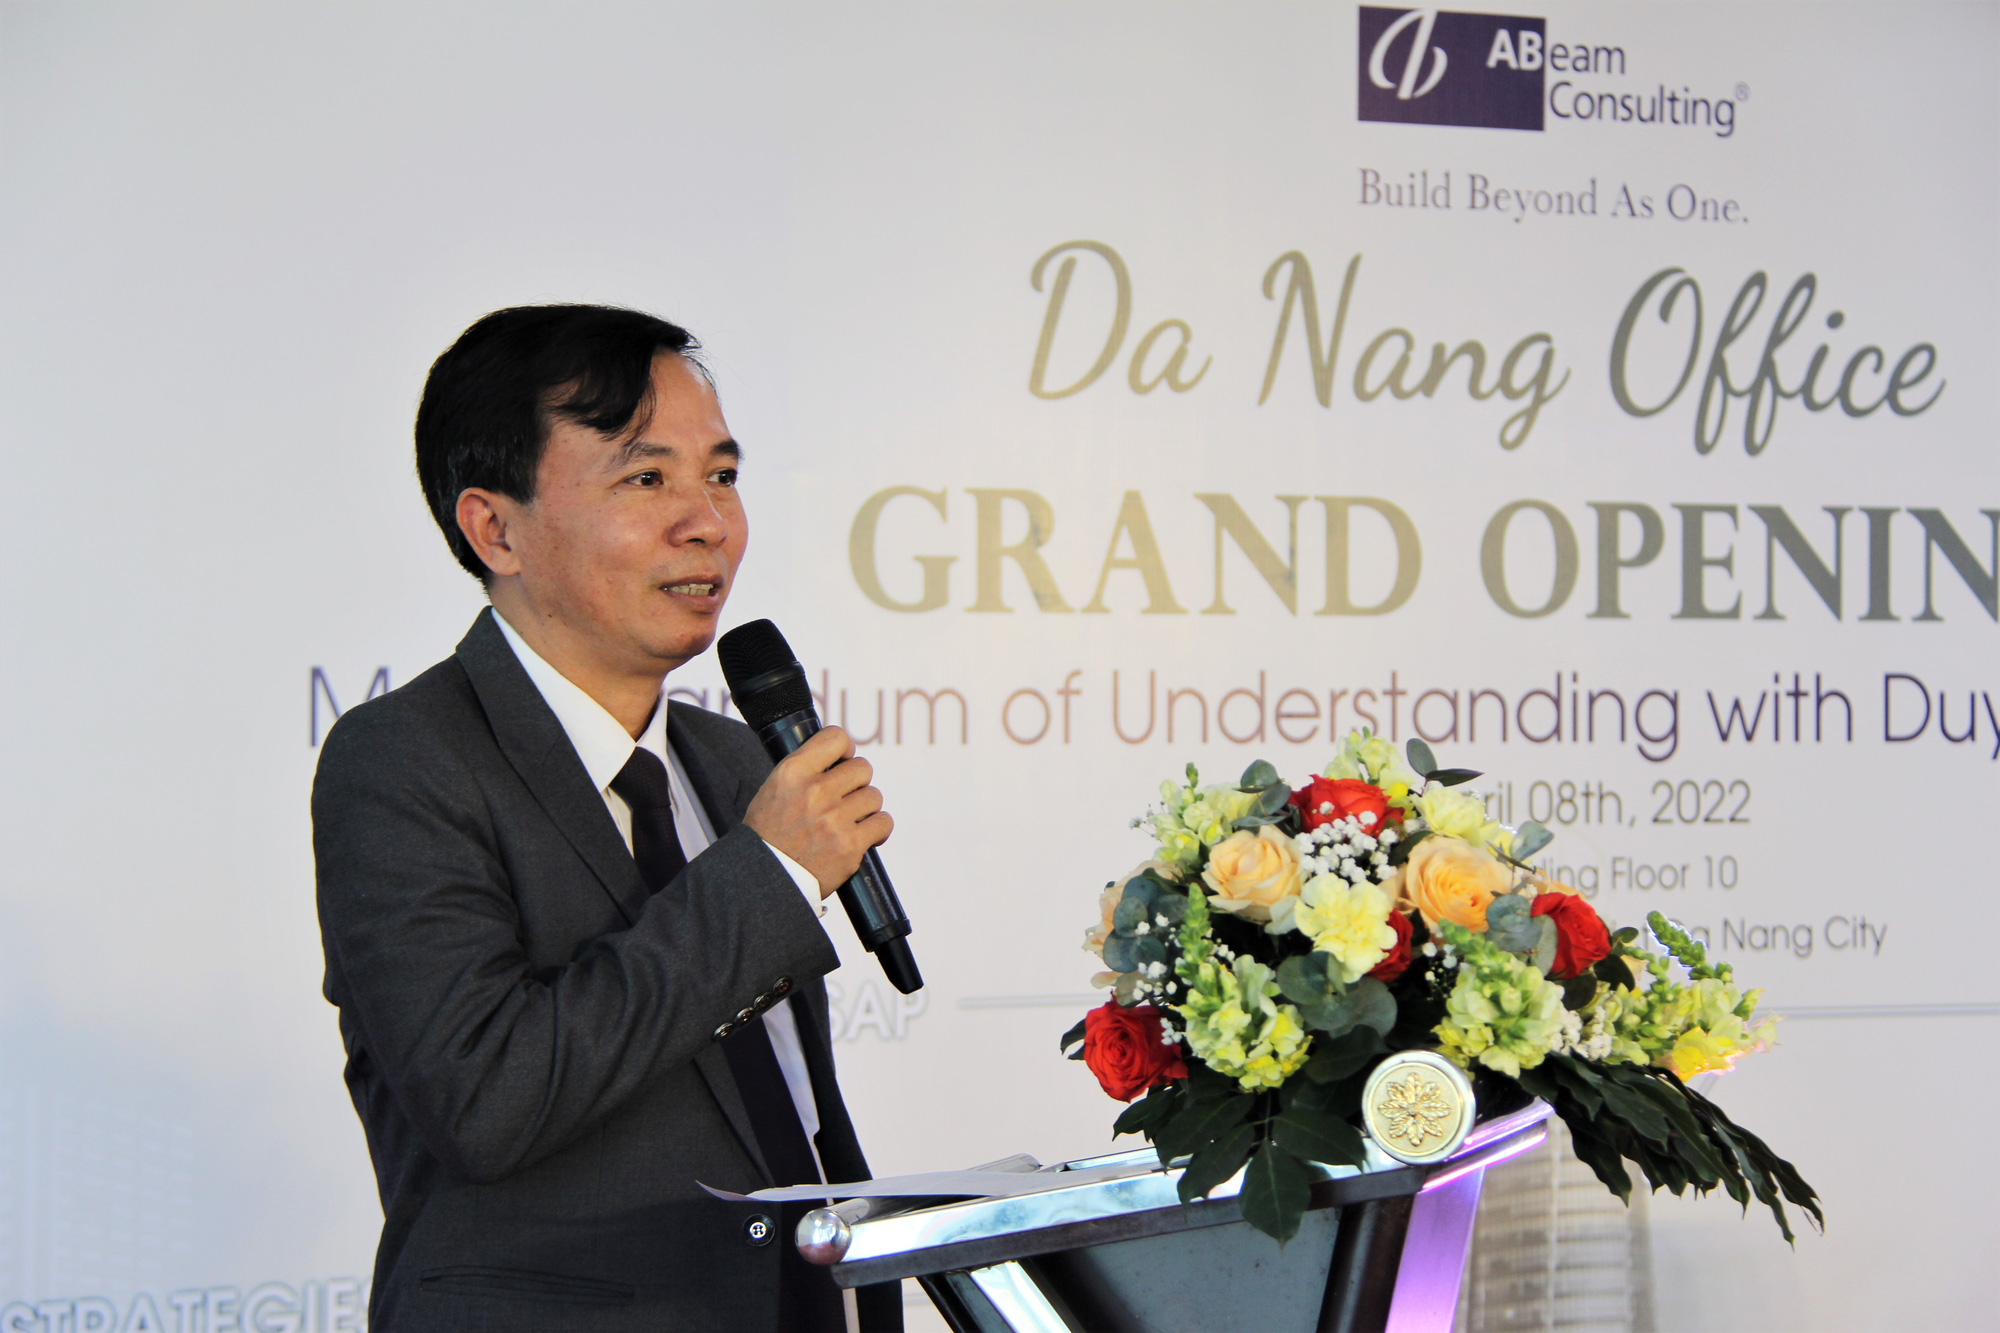  Trường ĐH Duy Tân, ABeam Consulting Việt Nam hợp tác về nguồn nhân lực - Ảnh 4.